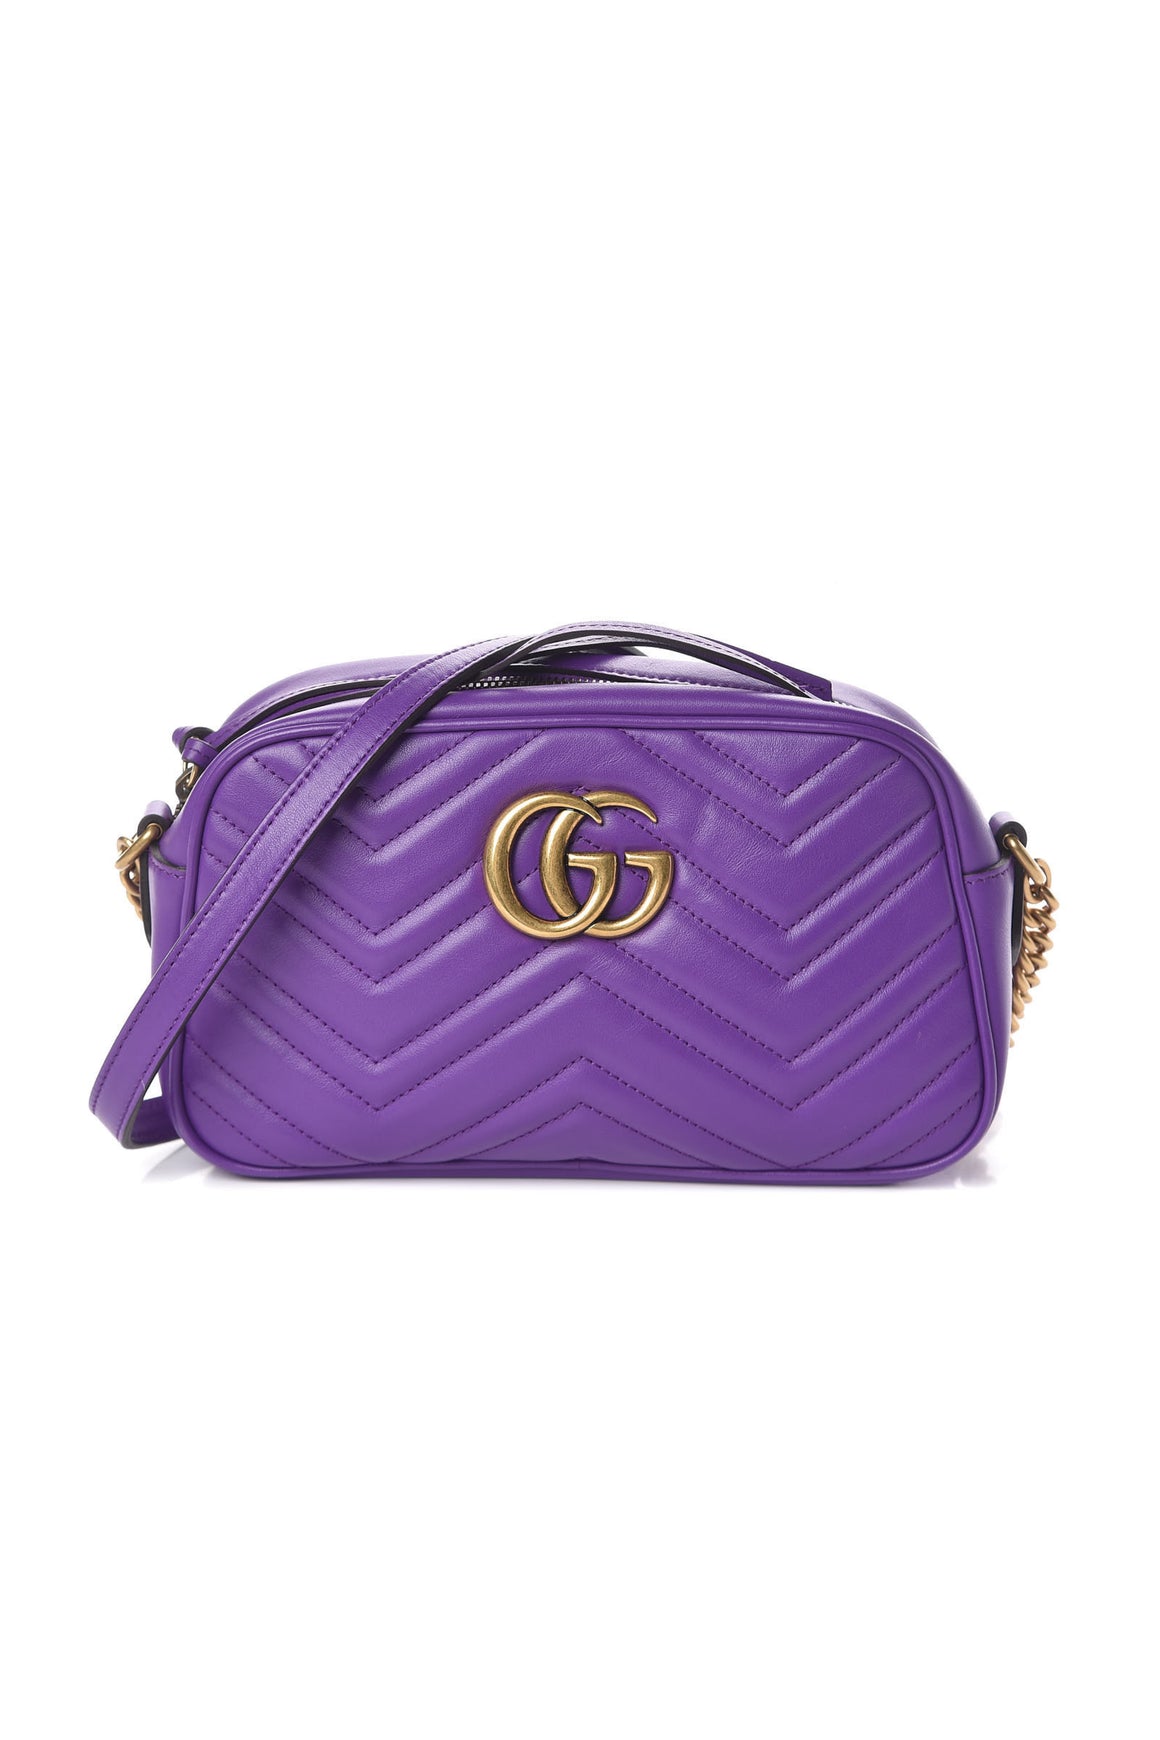 Gucci GG Marmont Small Matelassé Leather Shoulder Bag